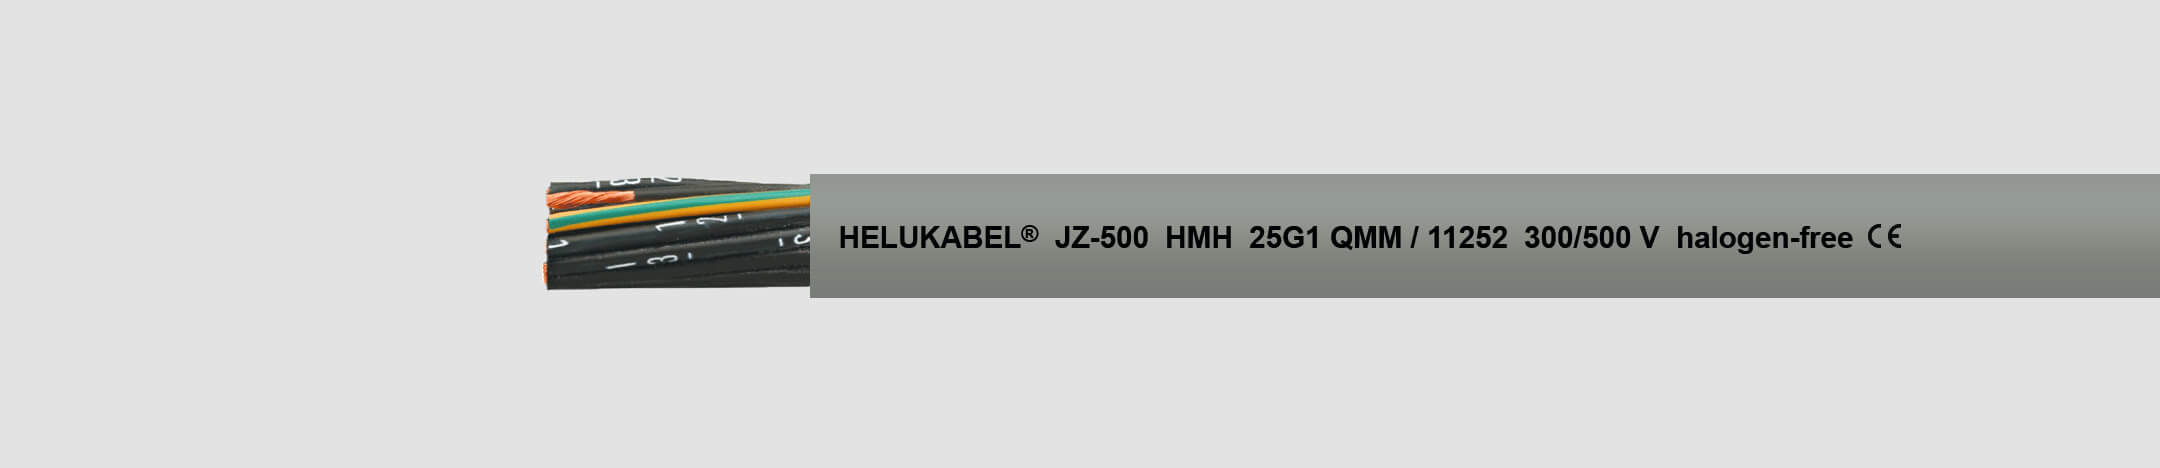 Безгалогеновый кабель HELUKABEL JZ-500 HMH